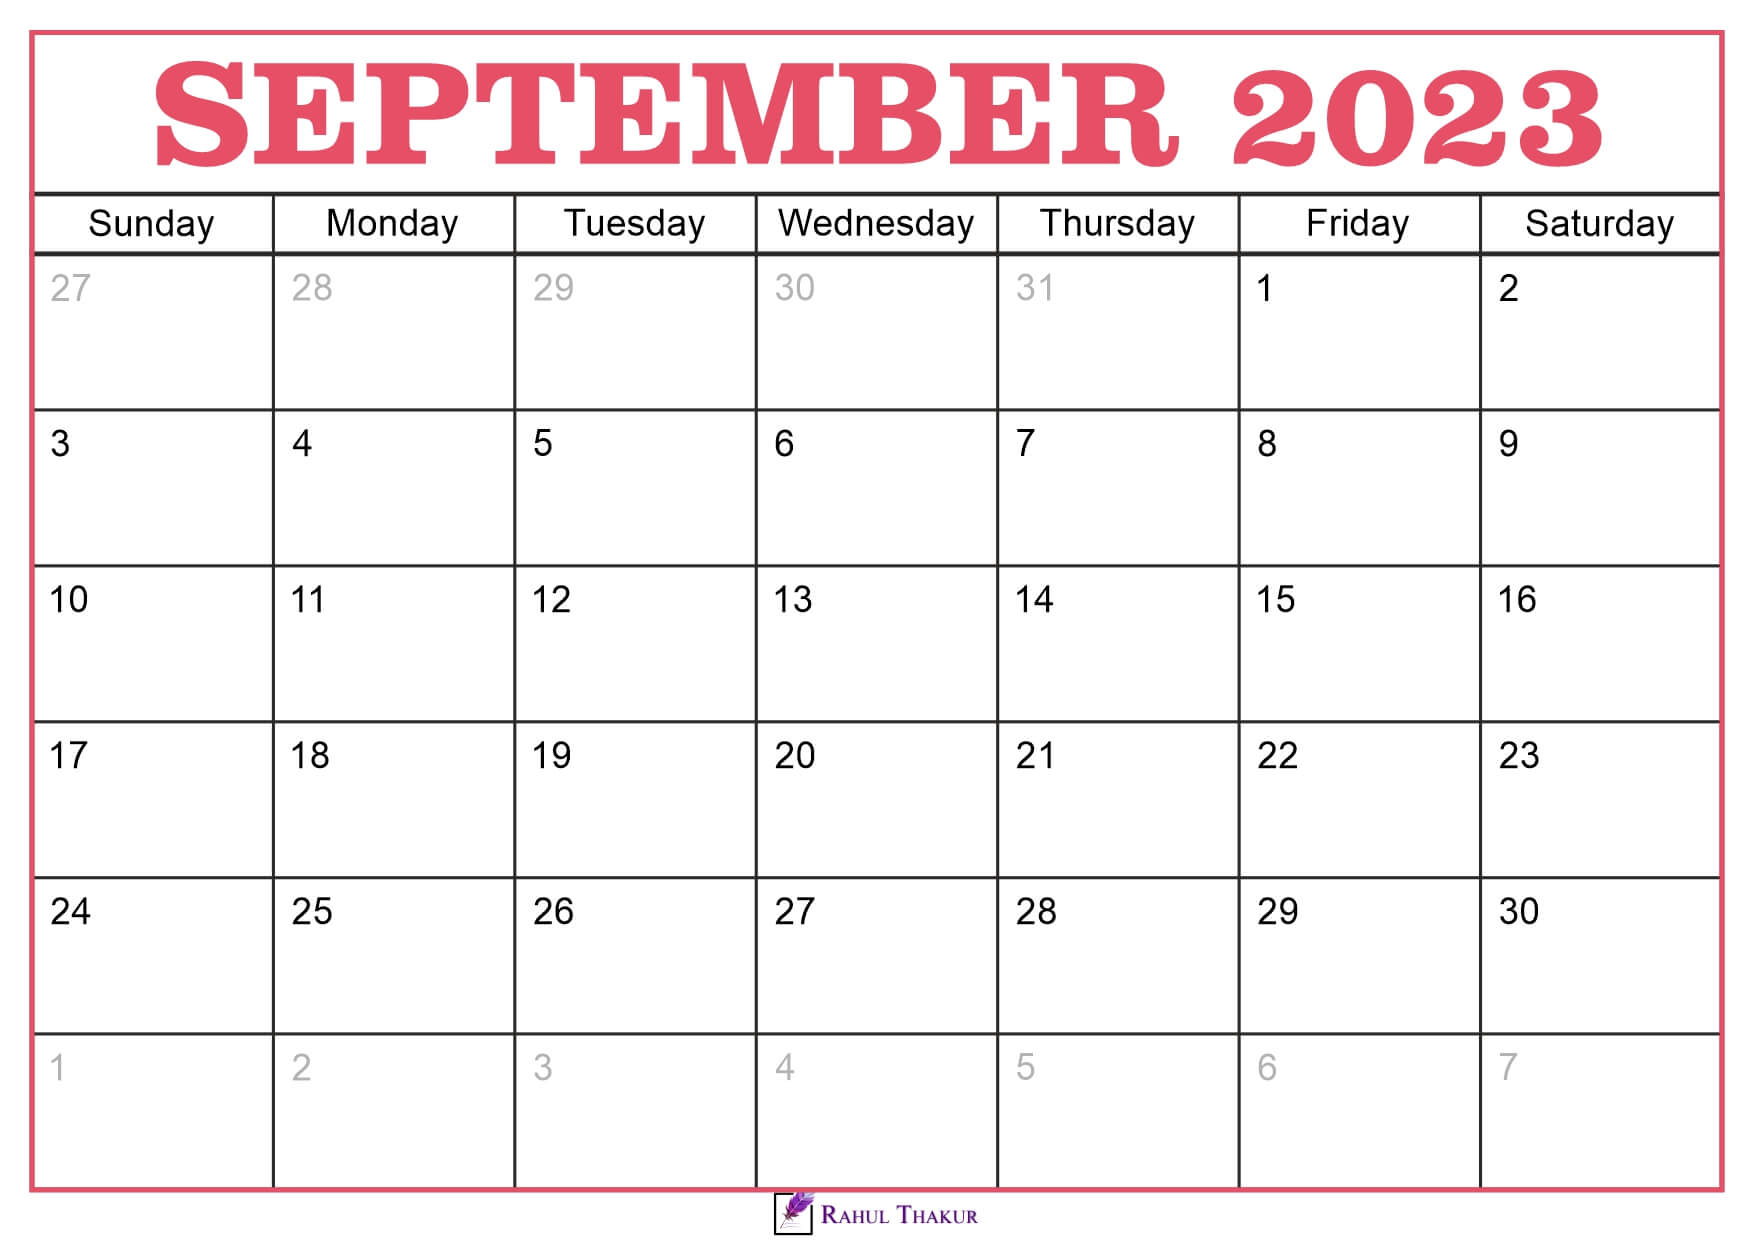 September 2023 Calendar Template